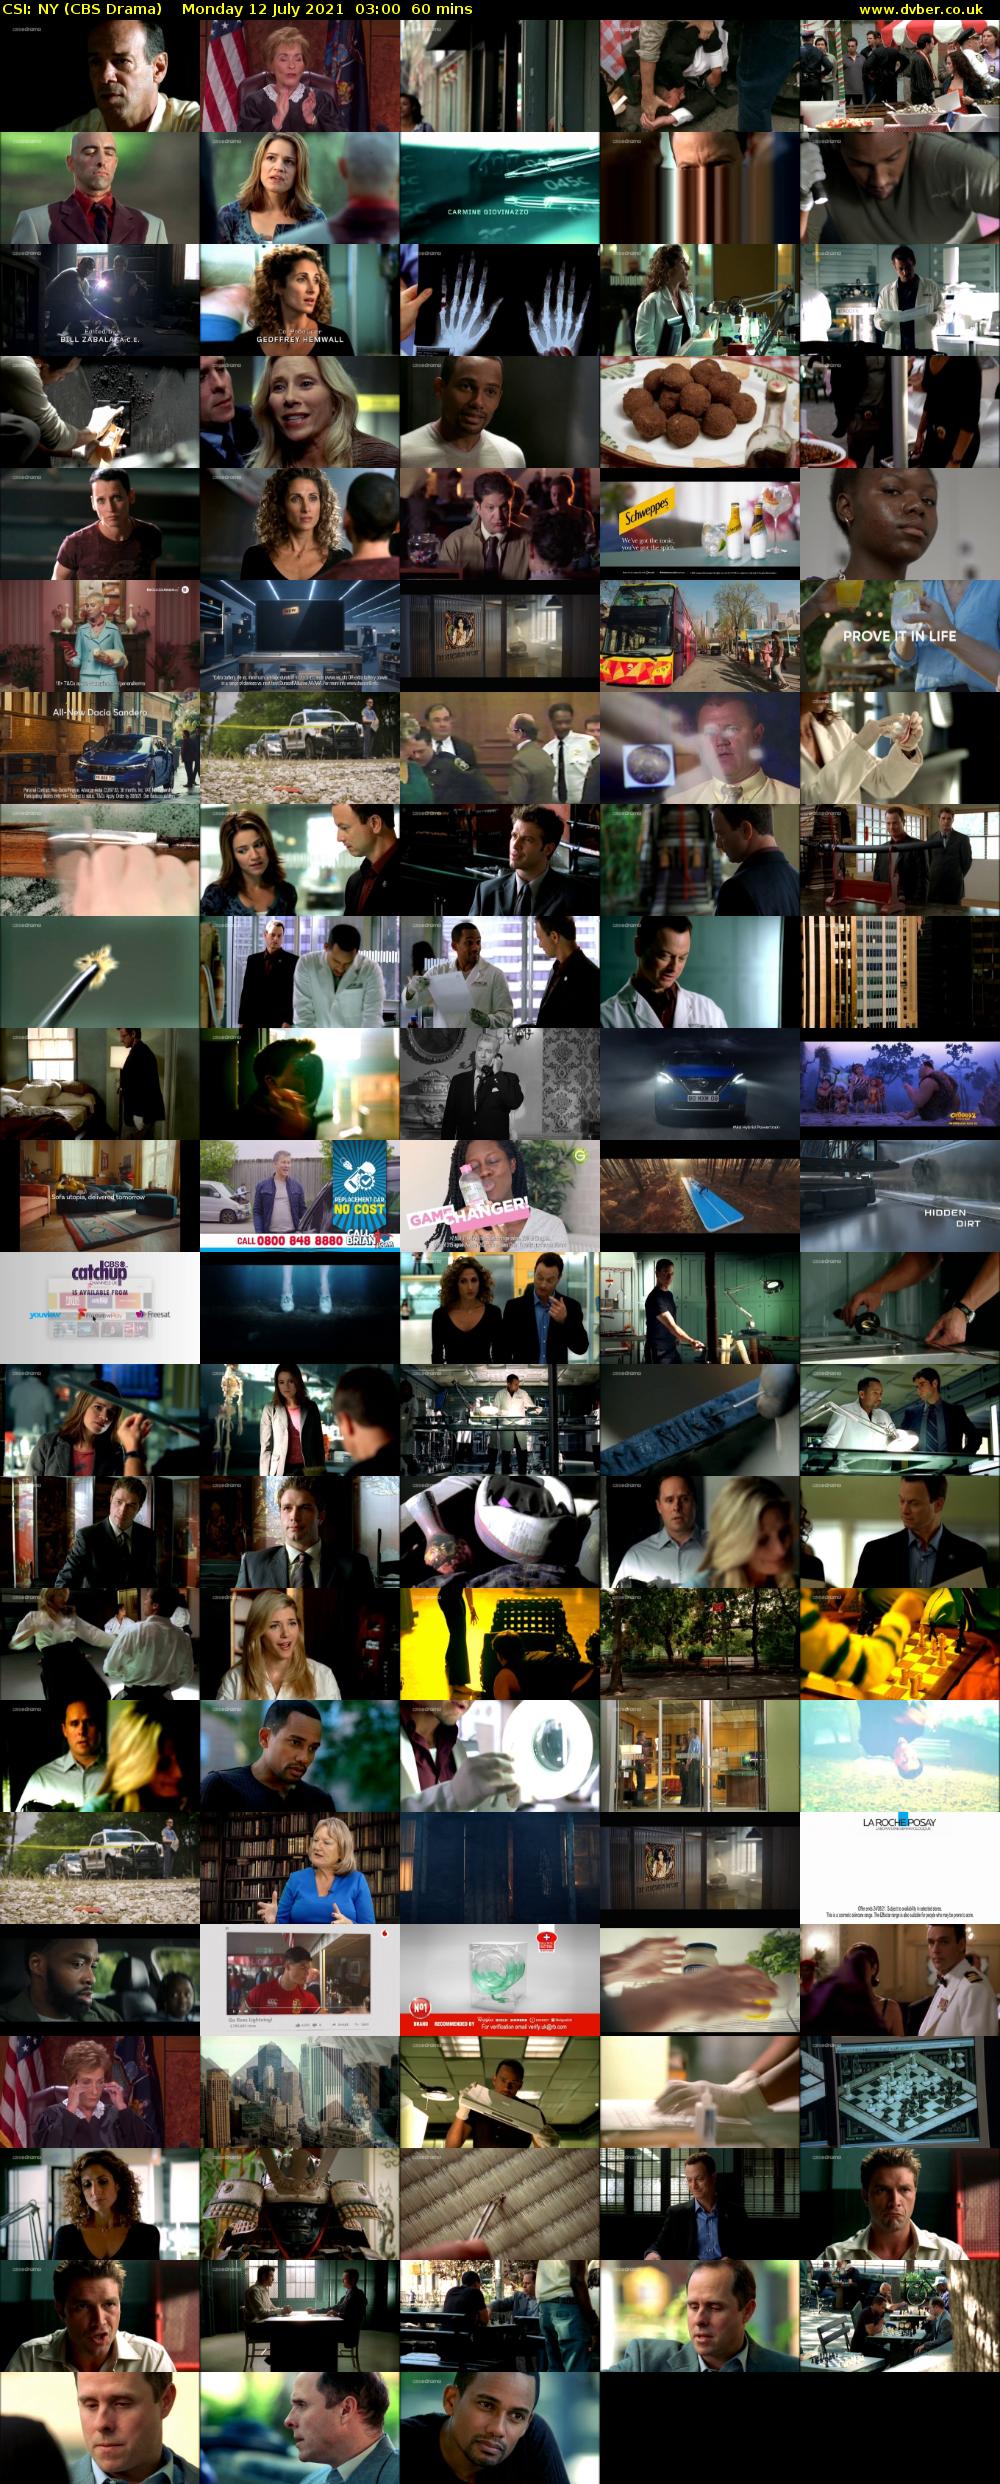 CSI: NY (CBS Drama) Monday 12 July 2021 03:00 - 04:00